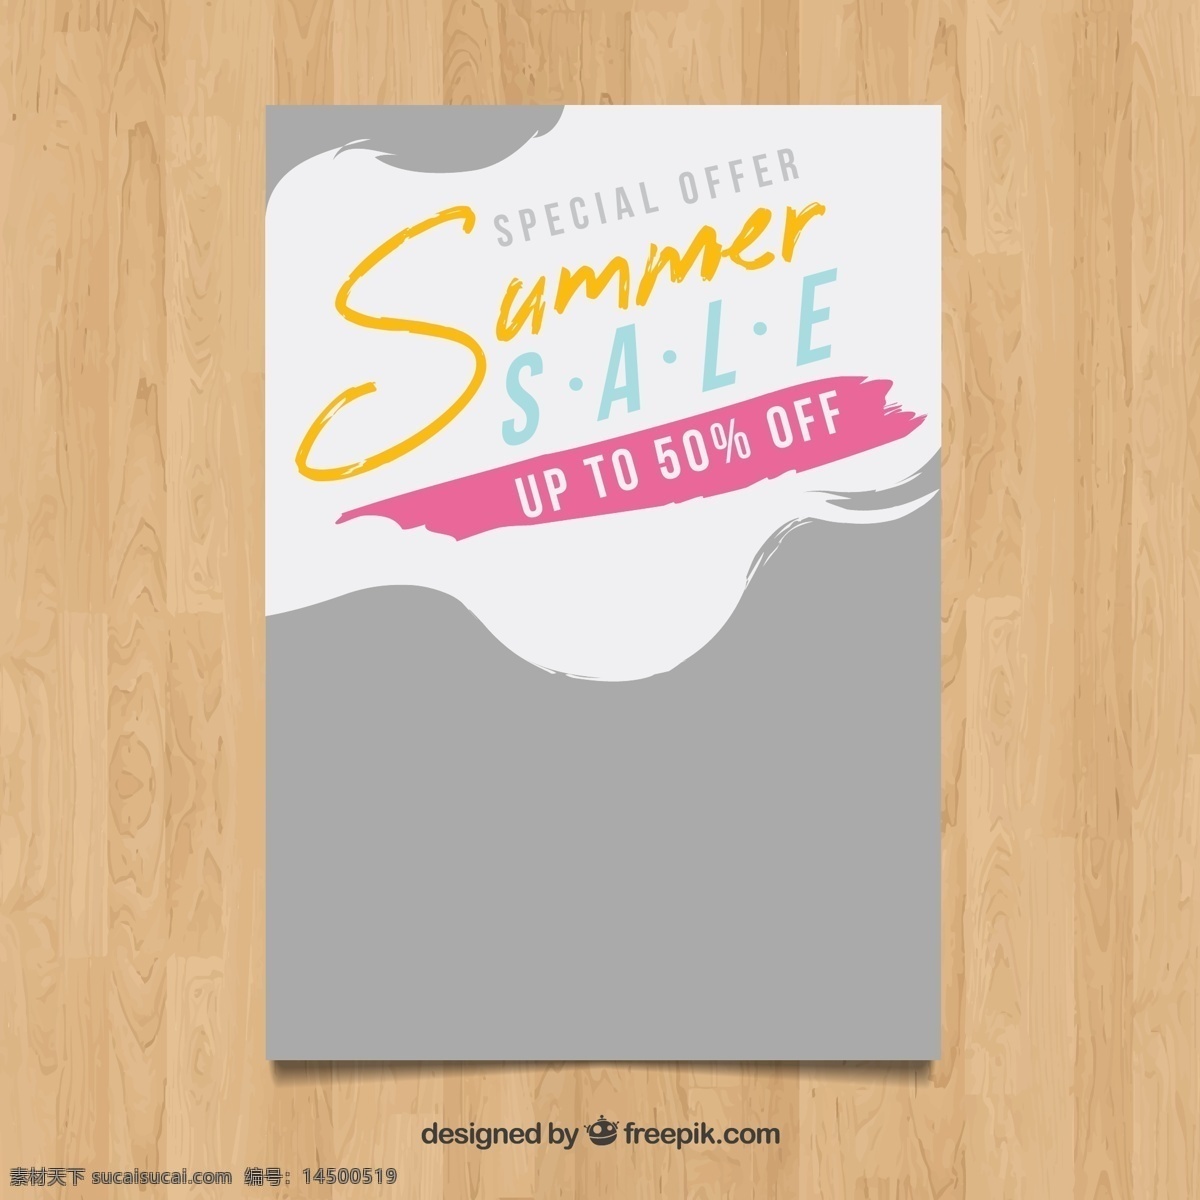 创意 夏季 半价 促销 传单 木板 广告海报设计 dm宣传单